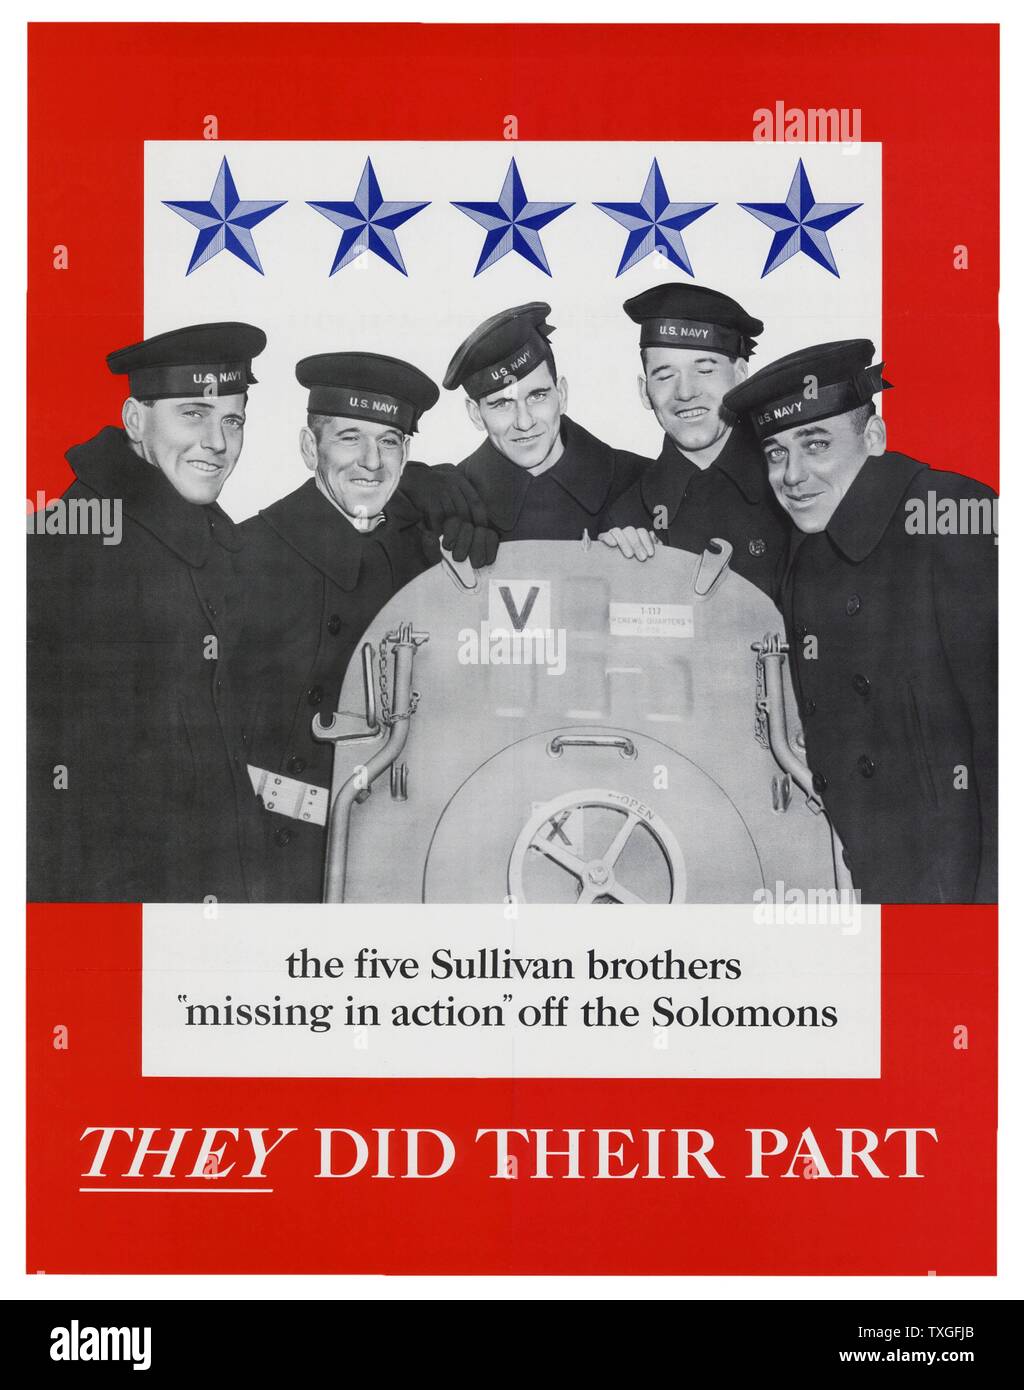 Affiches de guerre américain patriote concernant cinq frères disparus au combat dans le Pacifique, pendant la seconde guerre mondiale. 1943 Banque D'Images